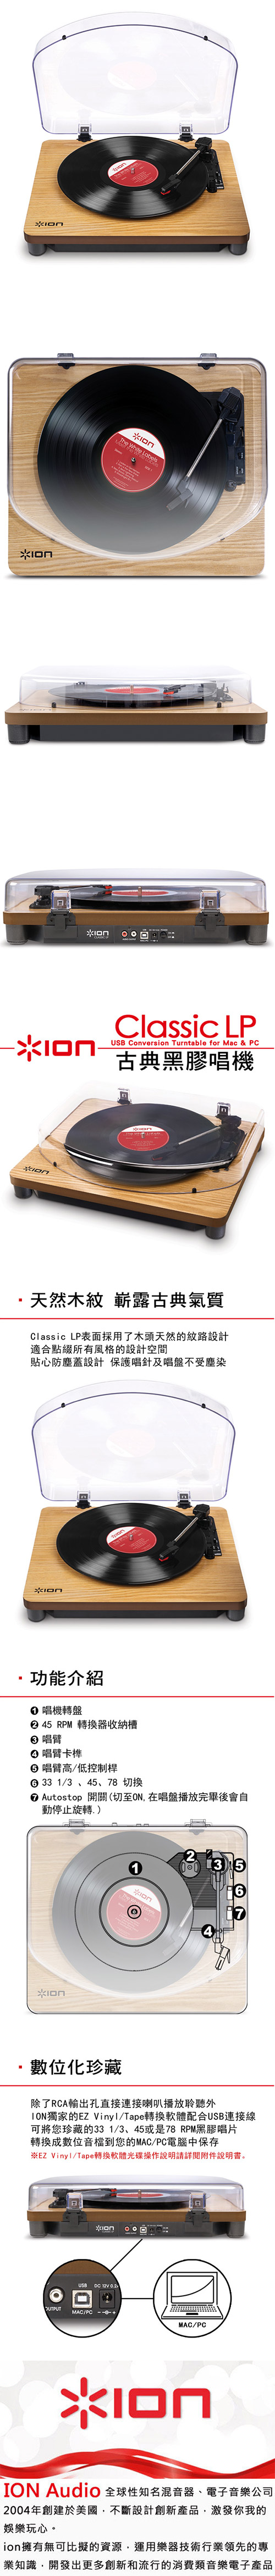 Ion Audio 古典黑膠唱機 CLASSIC LP